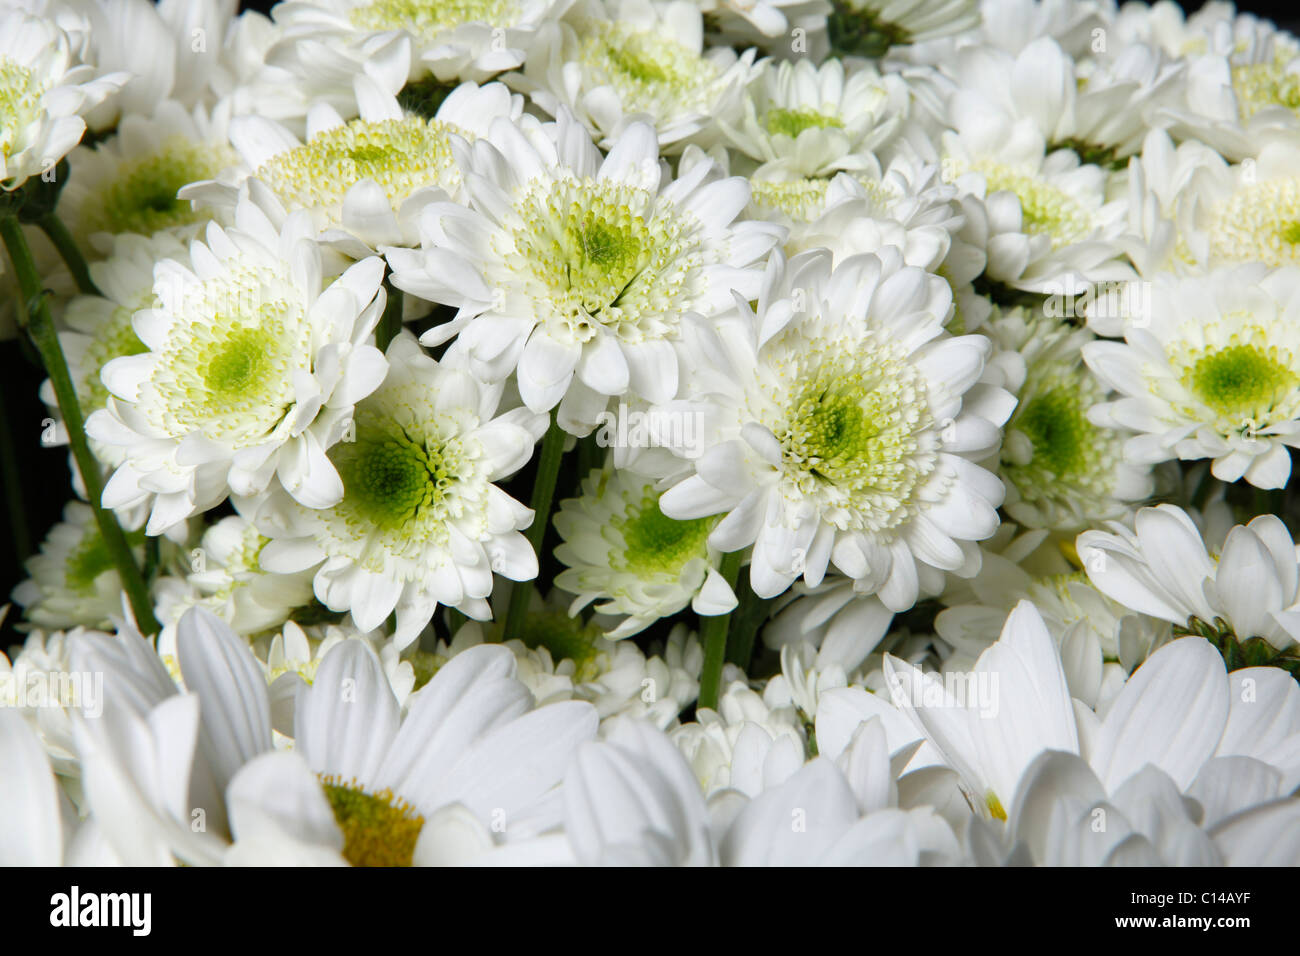 lots of white chrysanthemum Stock Photo